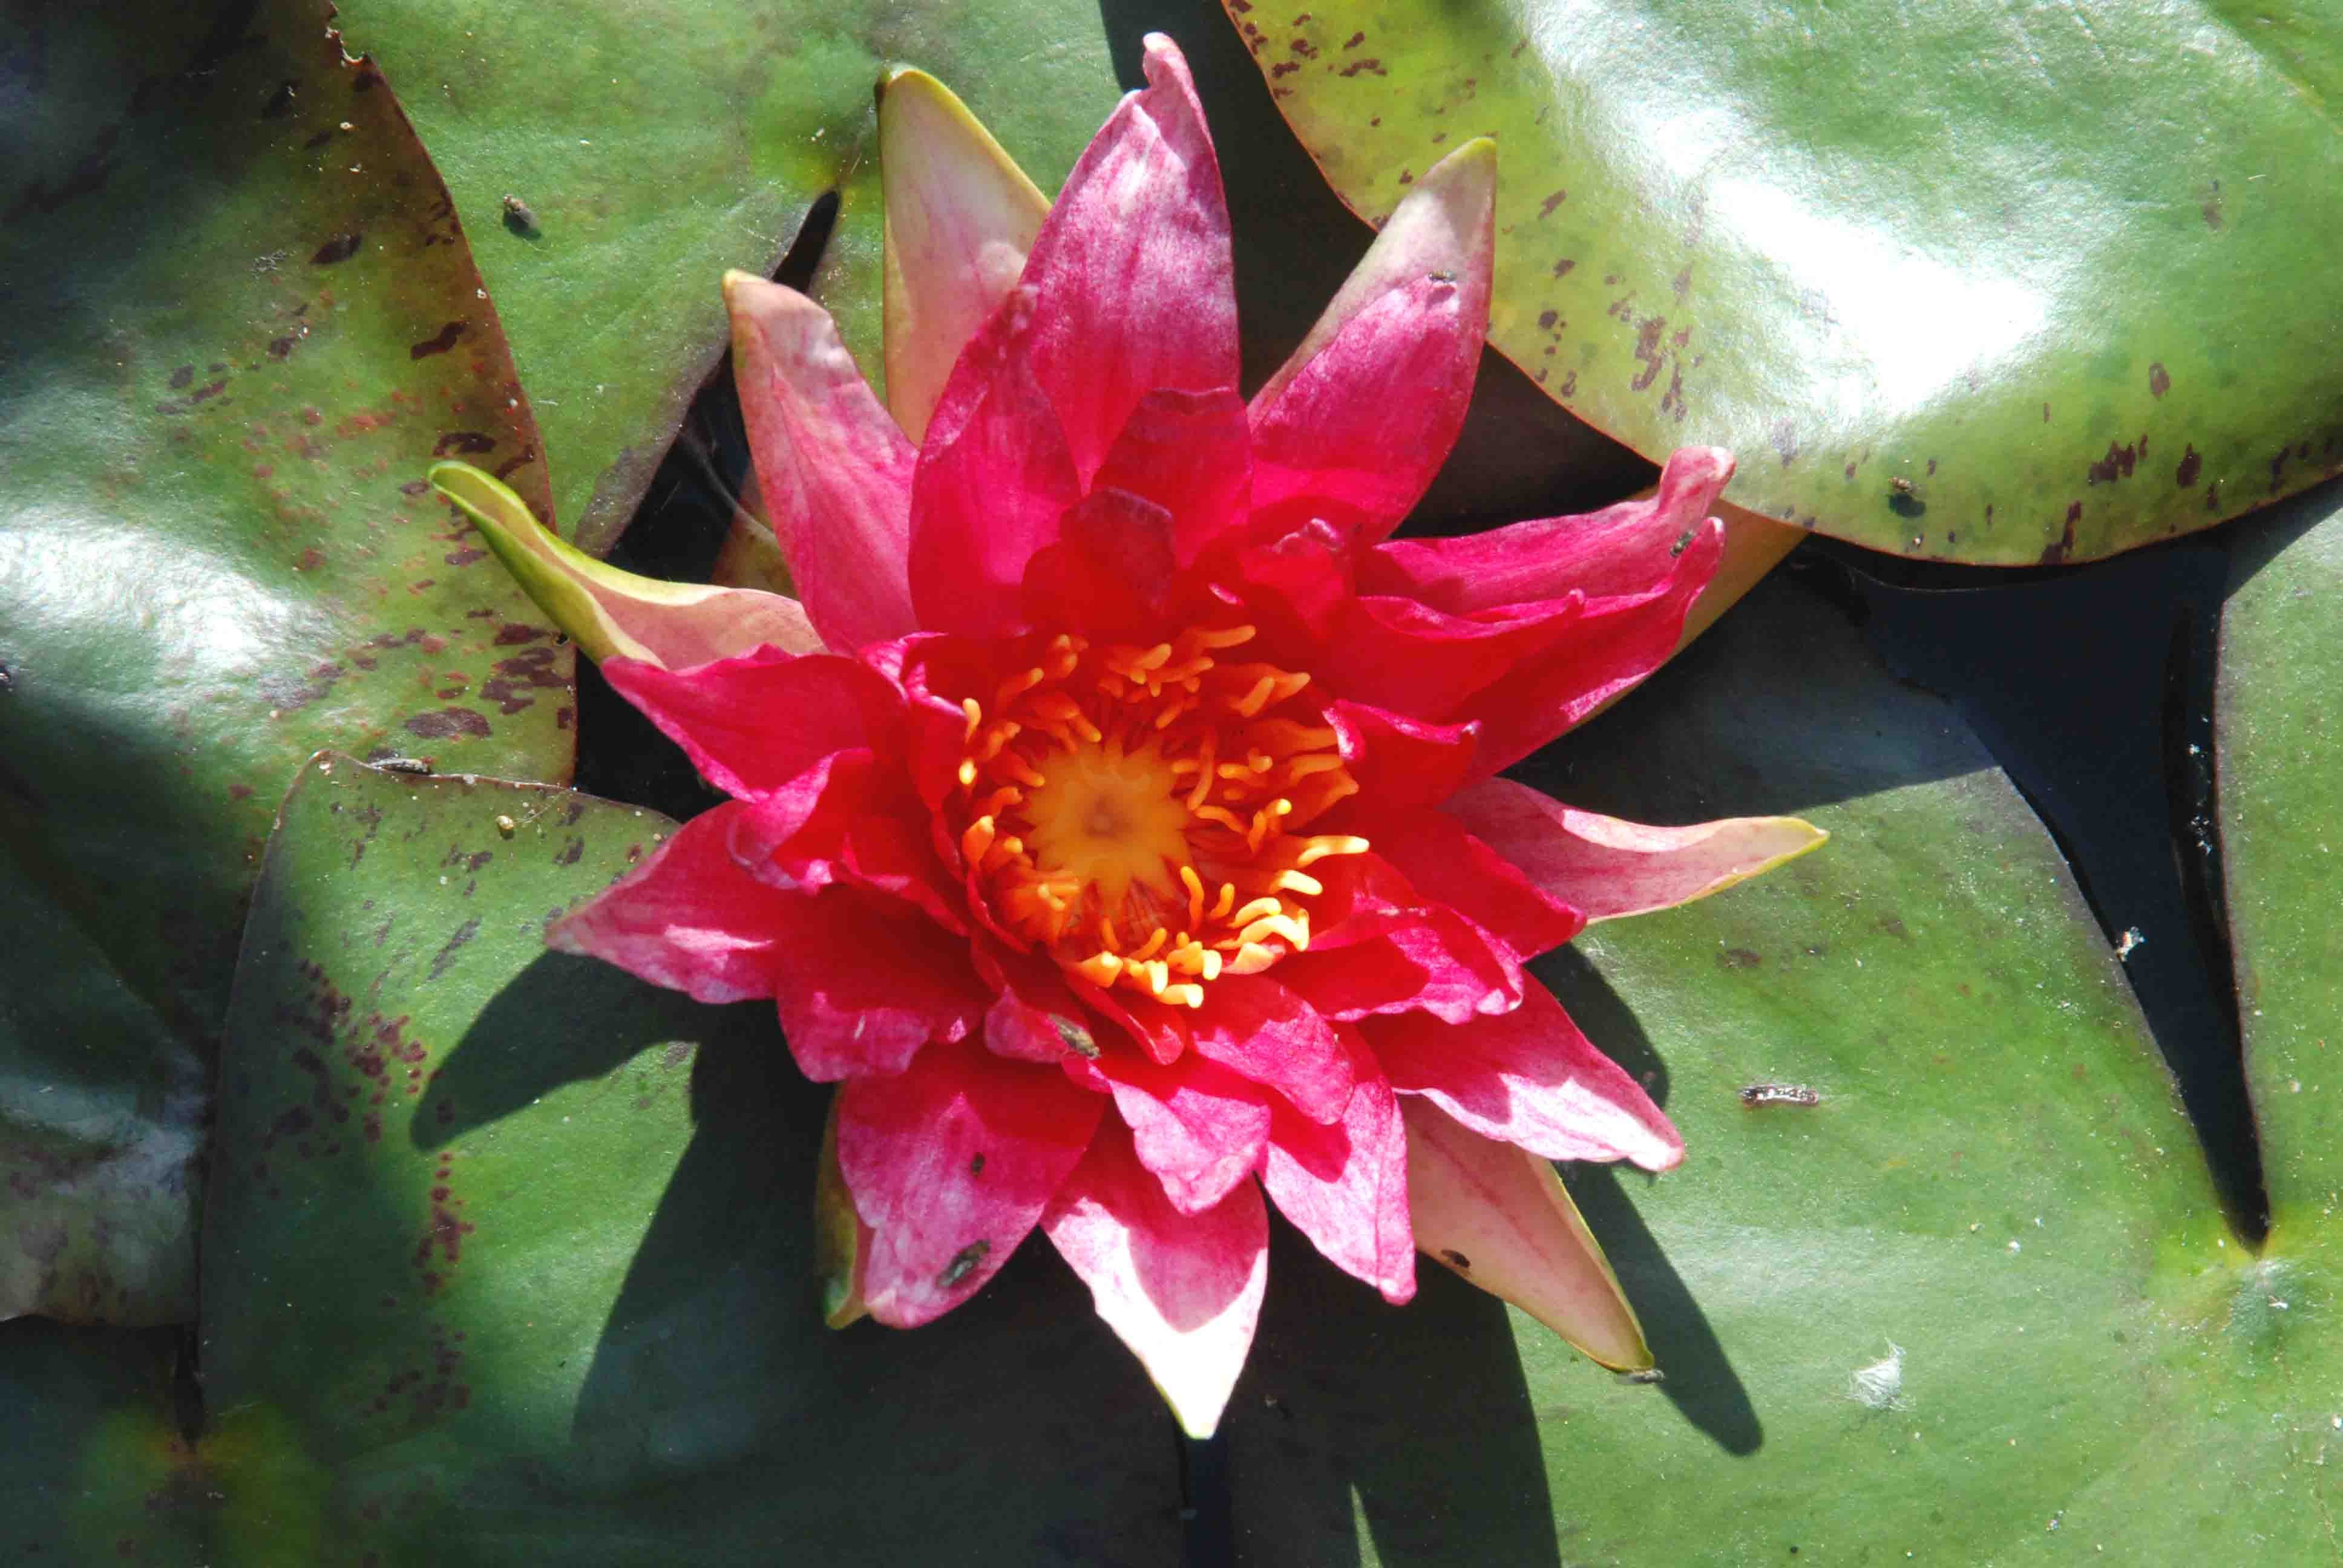 Nymphea Lotus - Joli nénuphar rouge à mettre au centre de l'aquarium